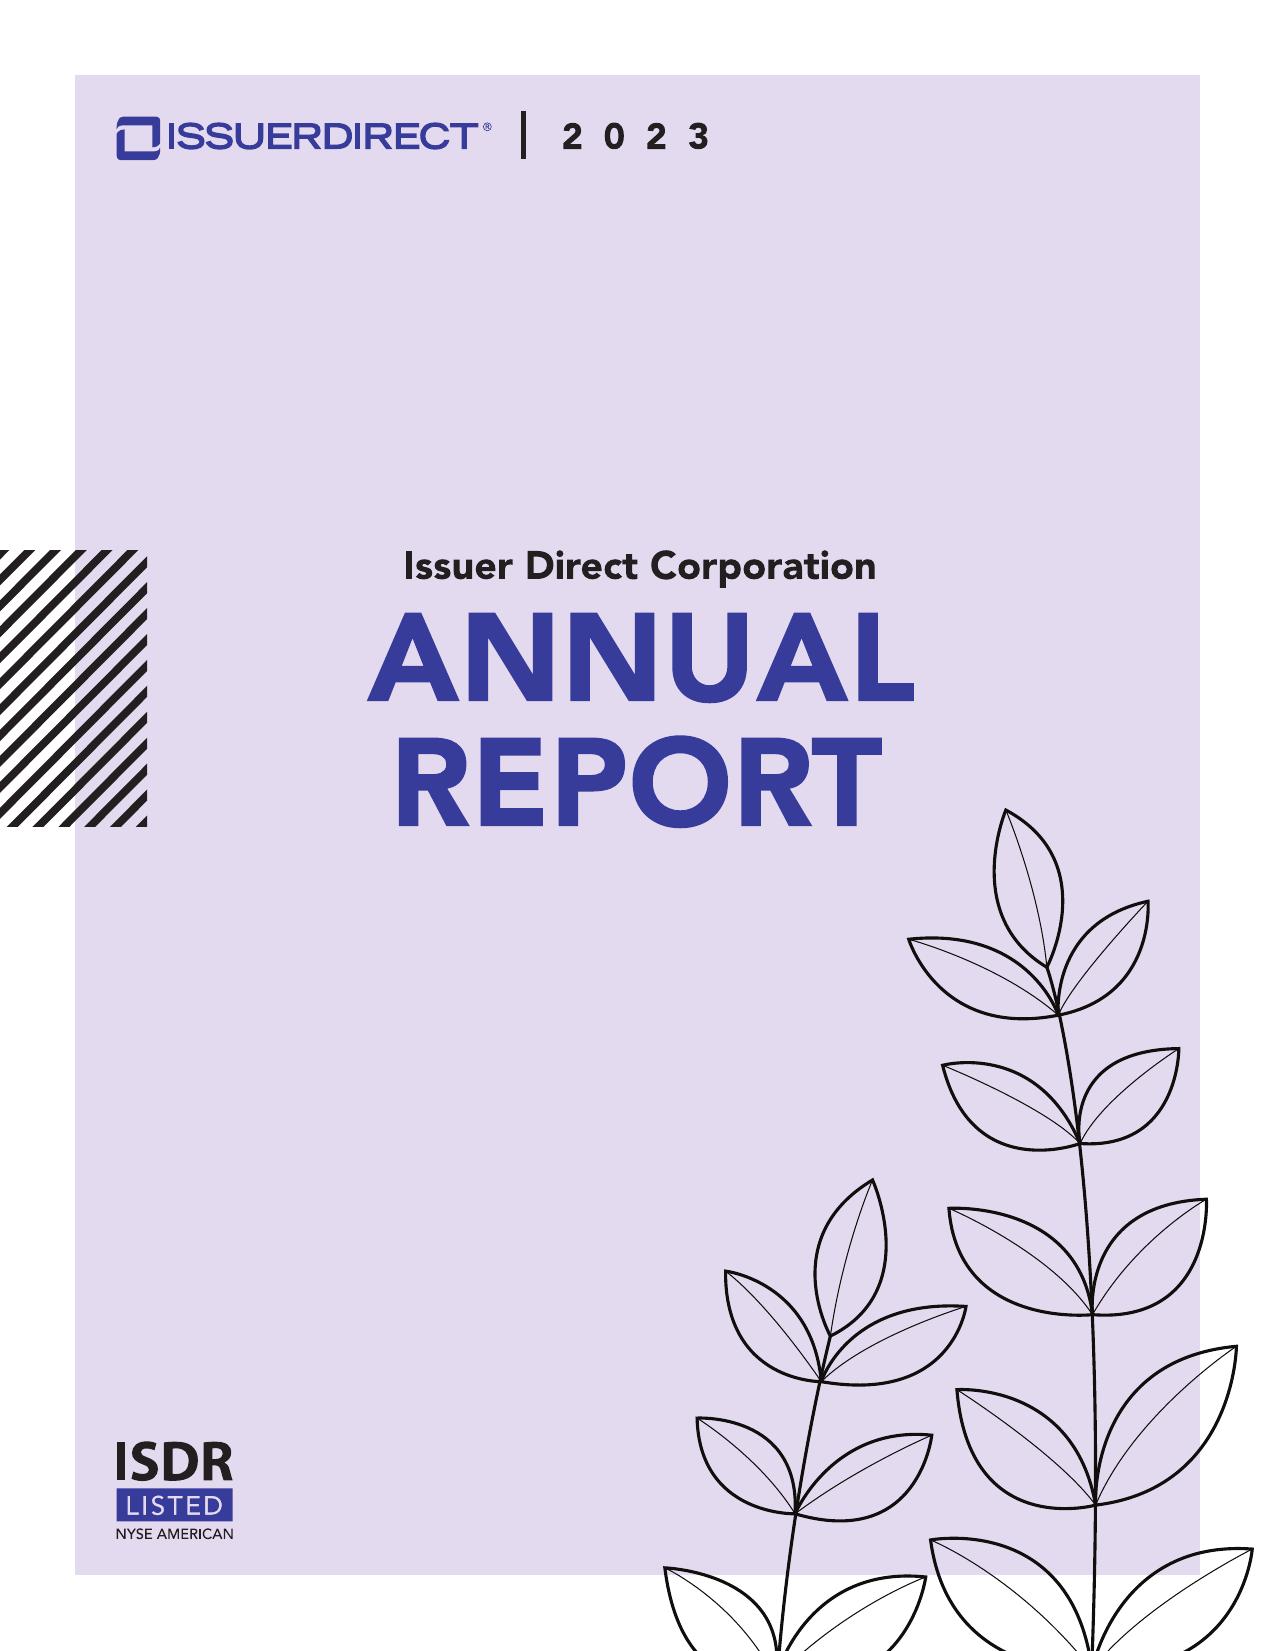 ISSUERDIRECT Annual Report